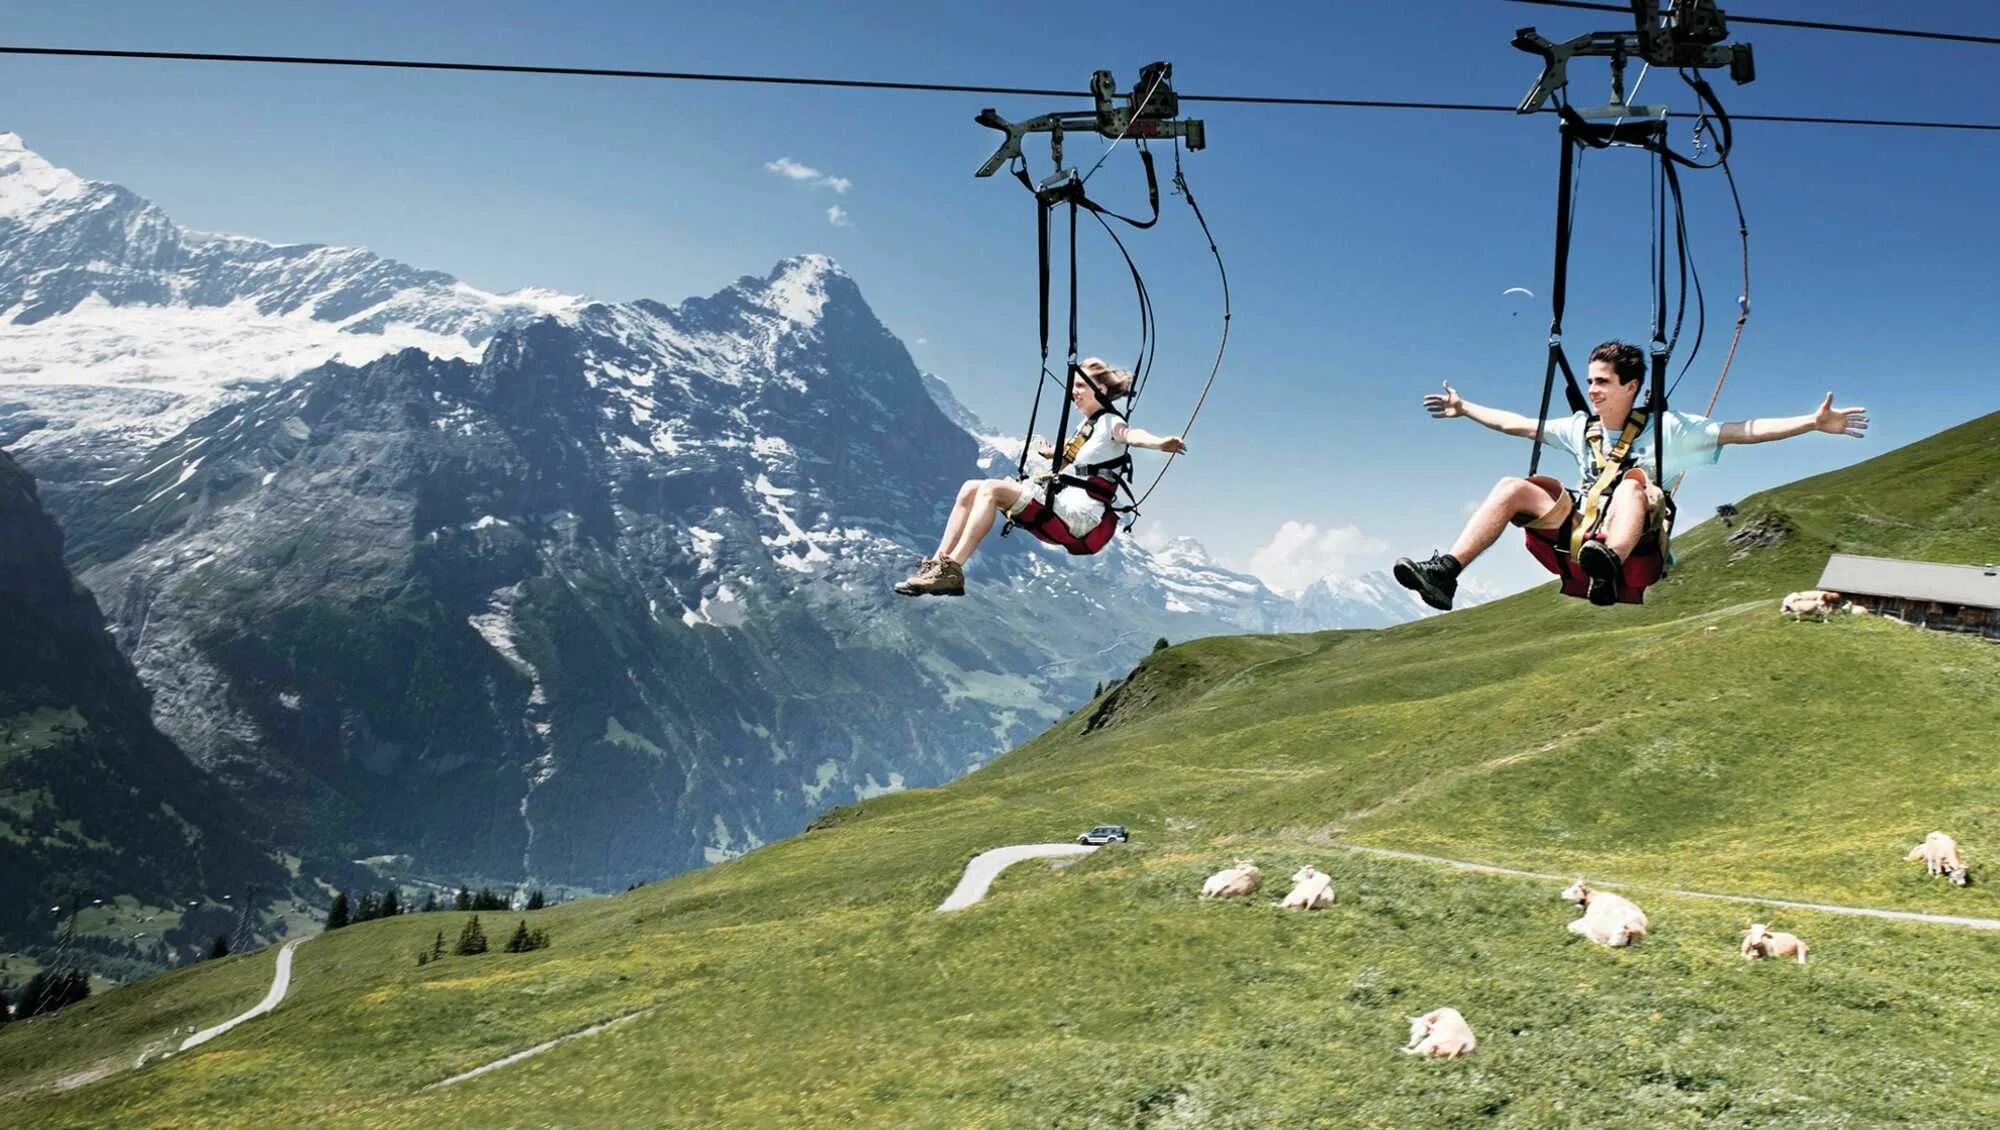 Гриндельвальд Фирст. Развлечения в горах. Швейцария аттракцион в горах. Зиплайн горные лыжи.